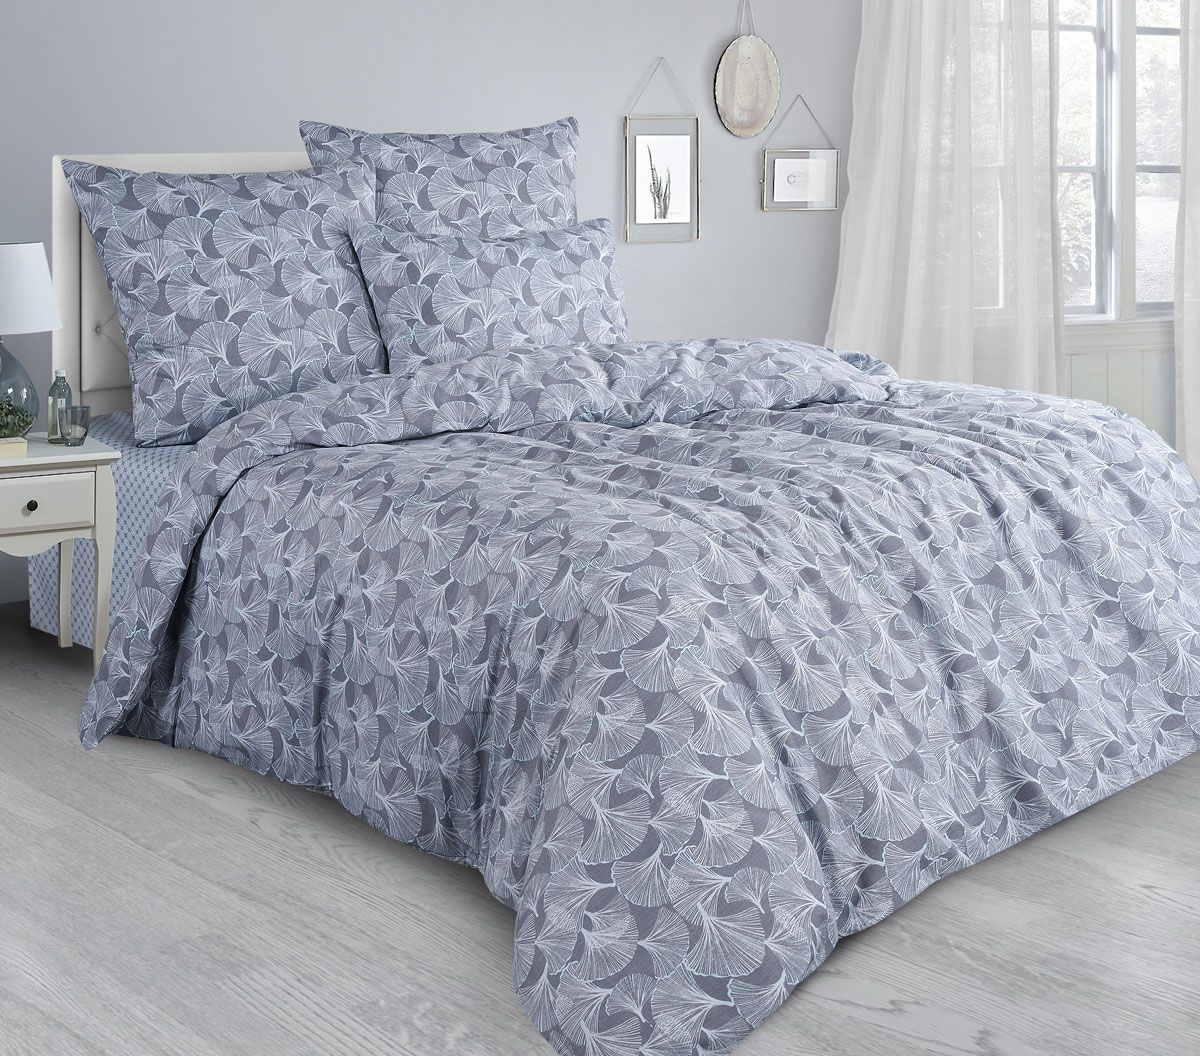 Комплект постельного белья Guten Morgen Premium Whisper, GMS-867-175-180-70, 2-спальный, наволочки 70x70, синий, темно-синий